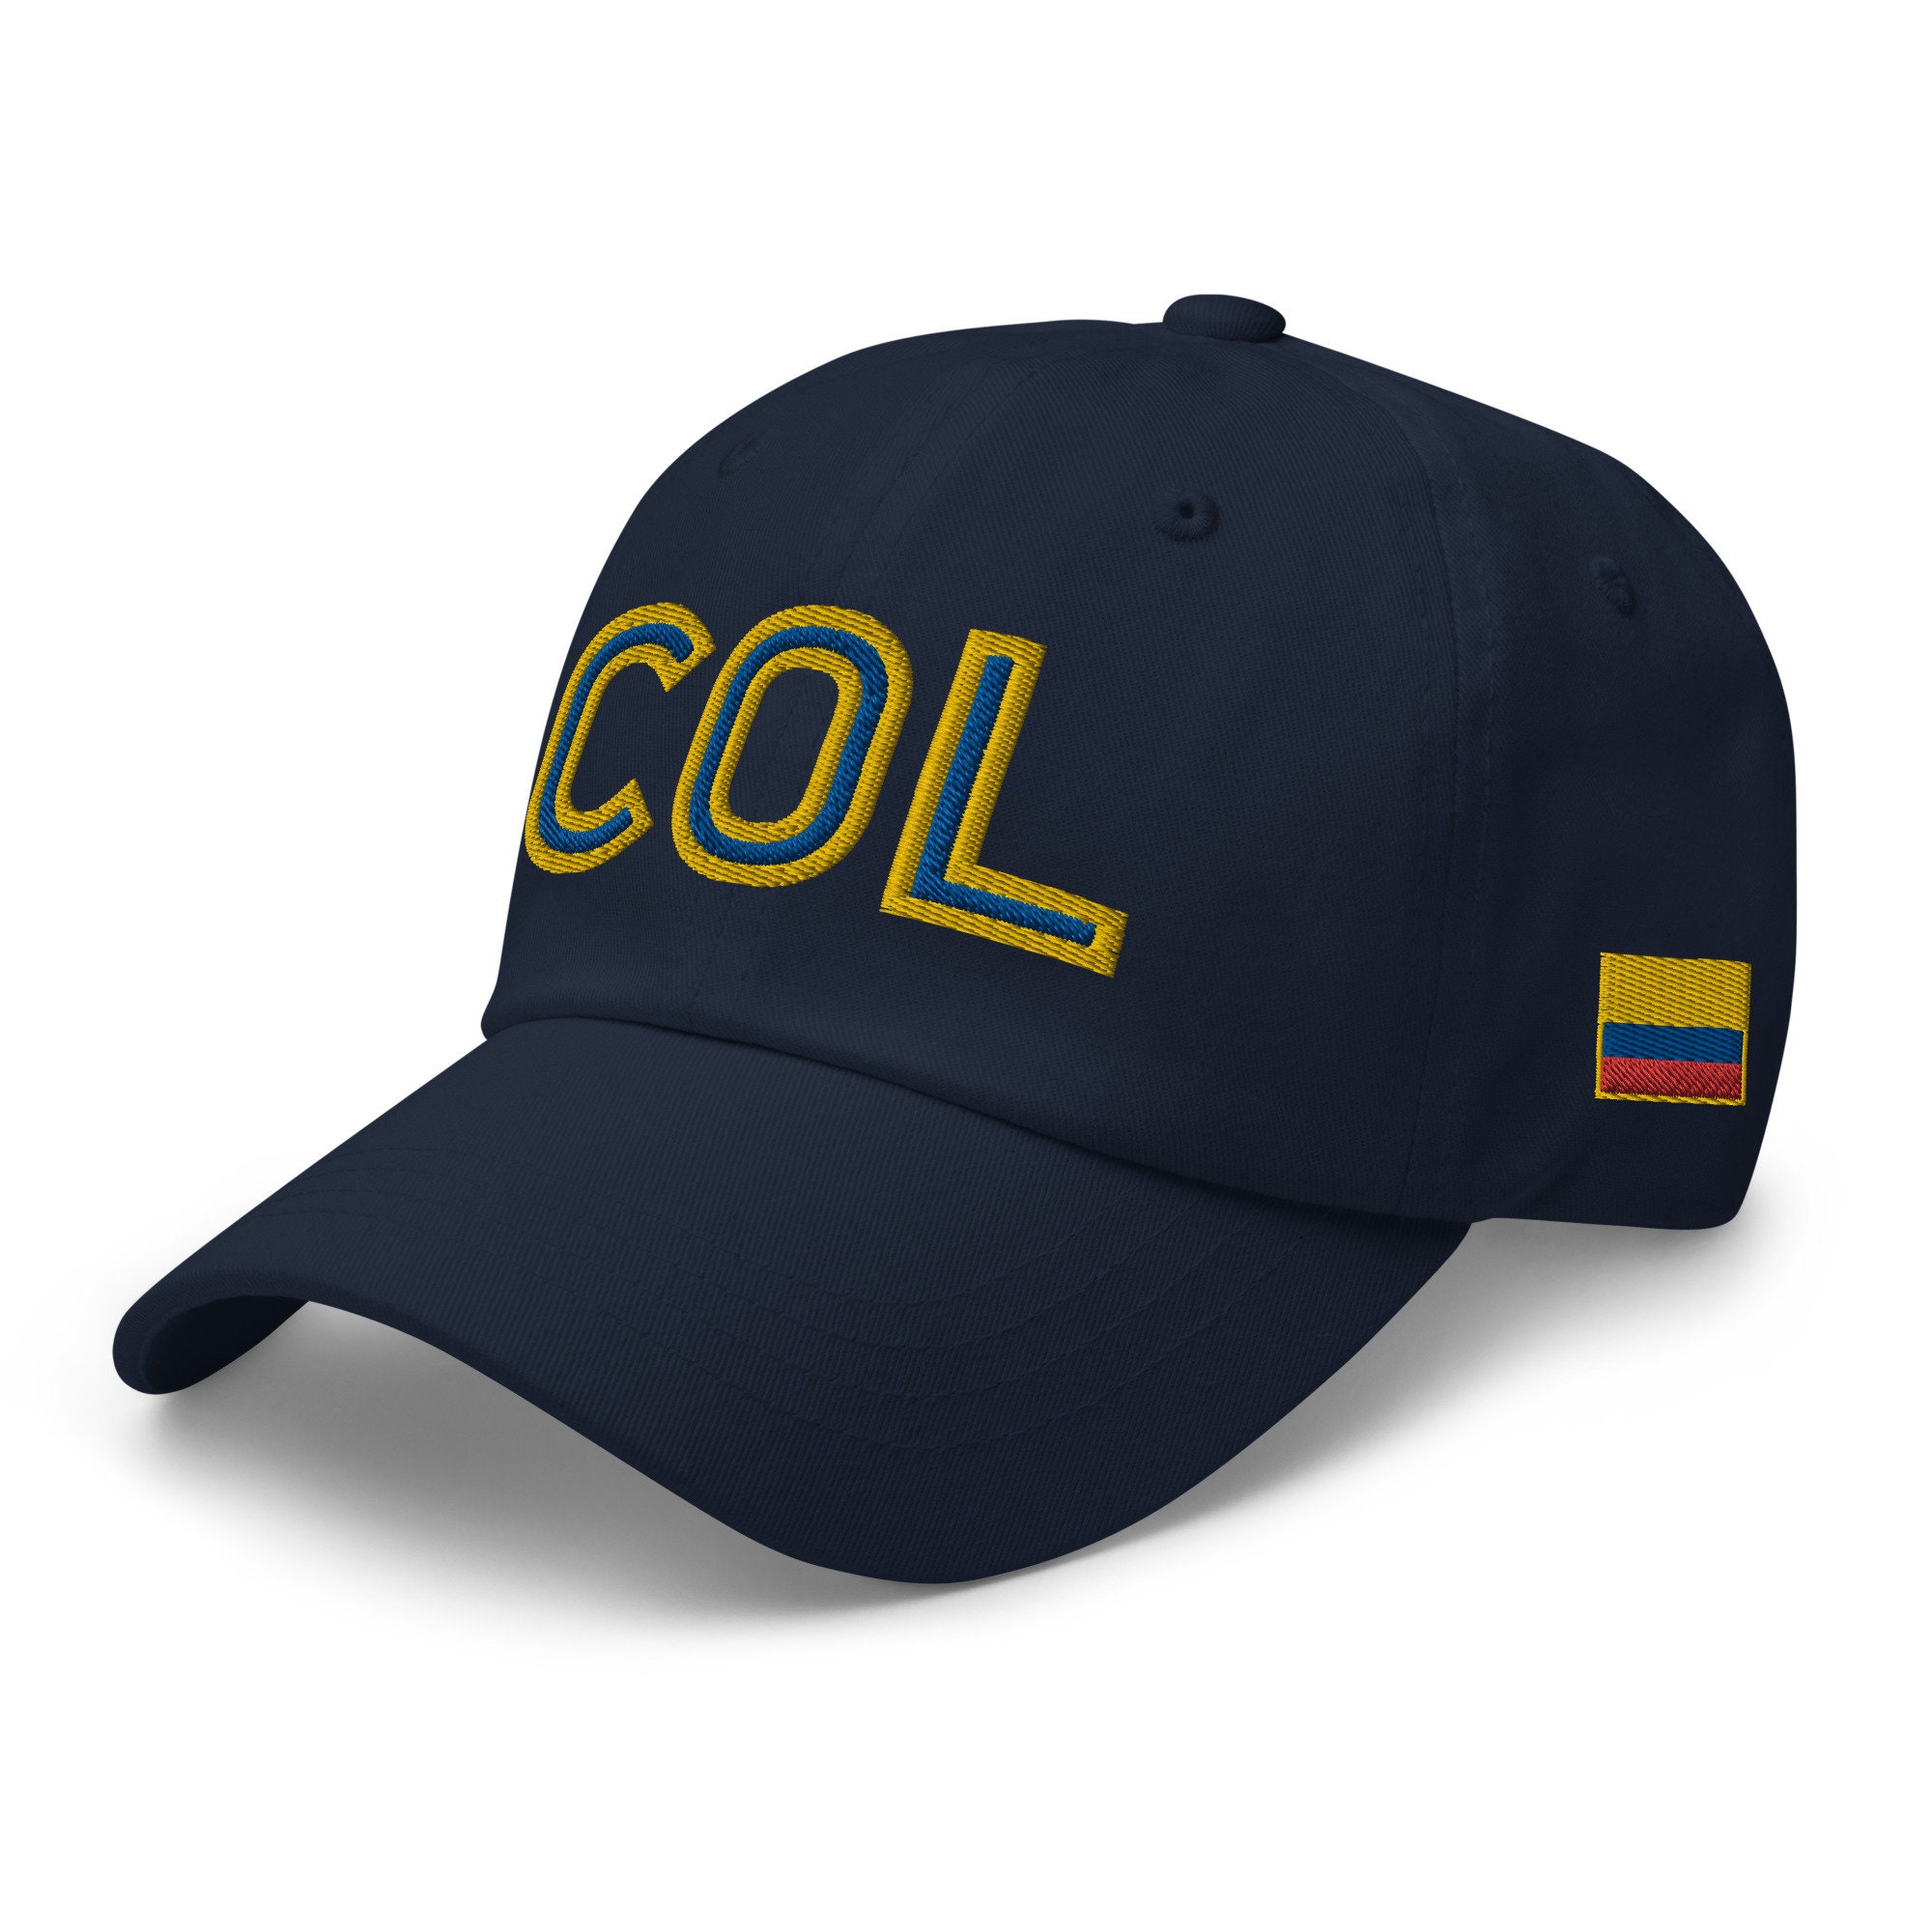 Hats - Productos de Colombia.com